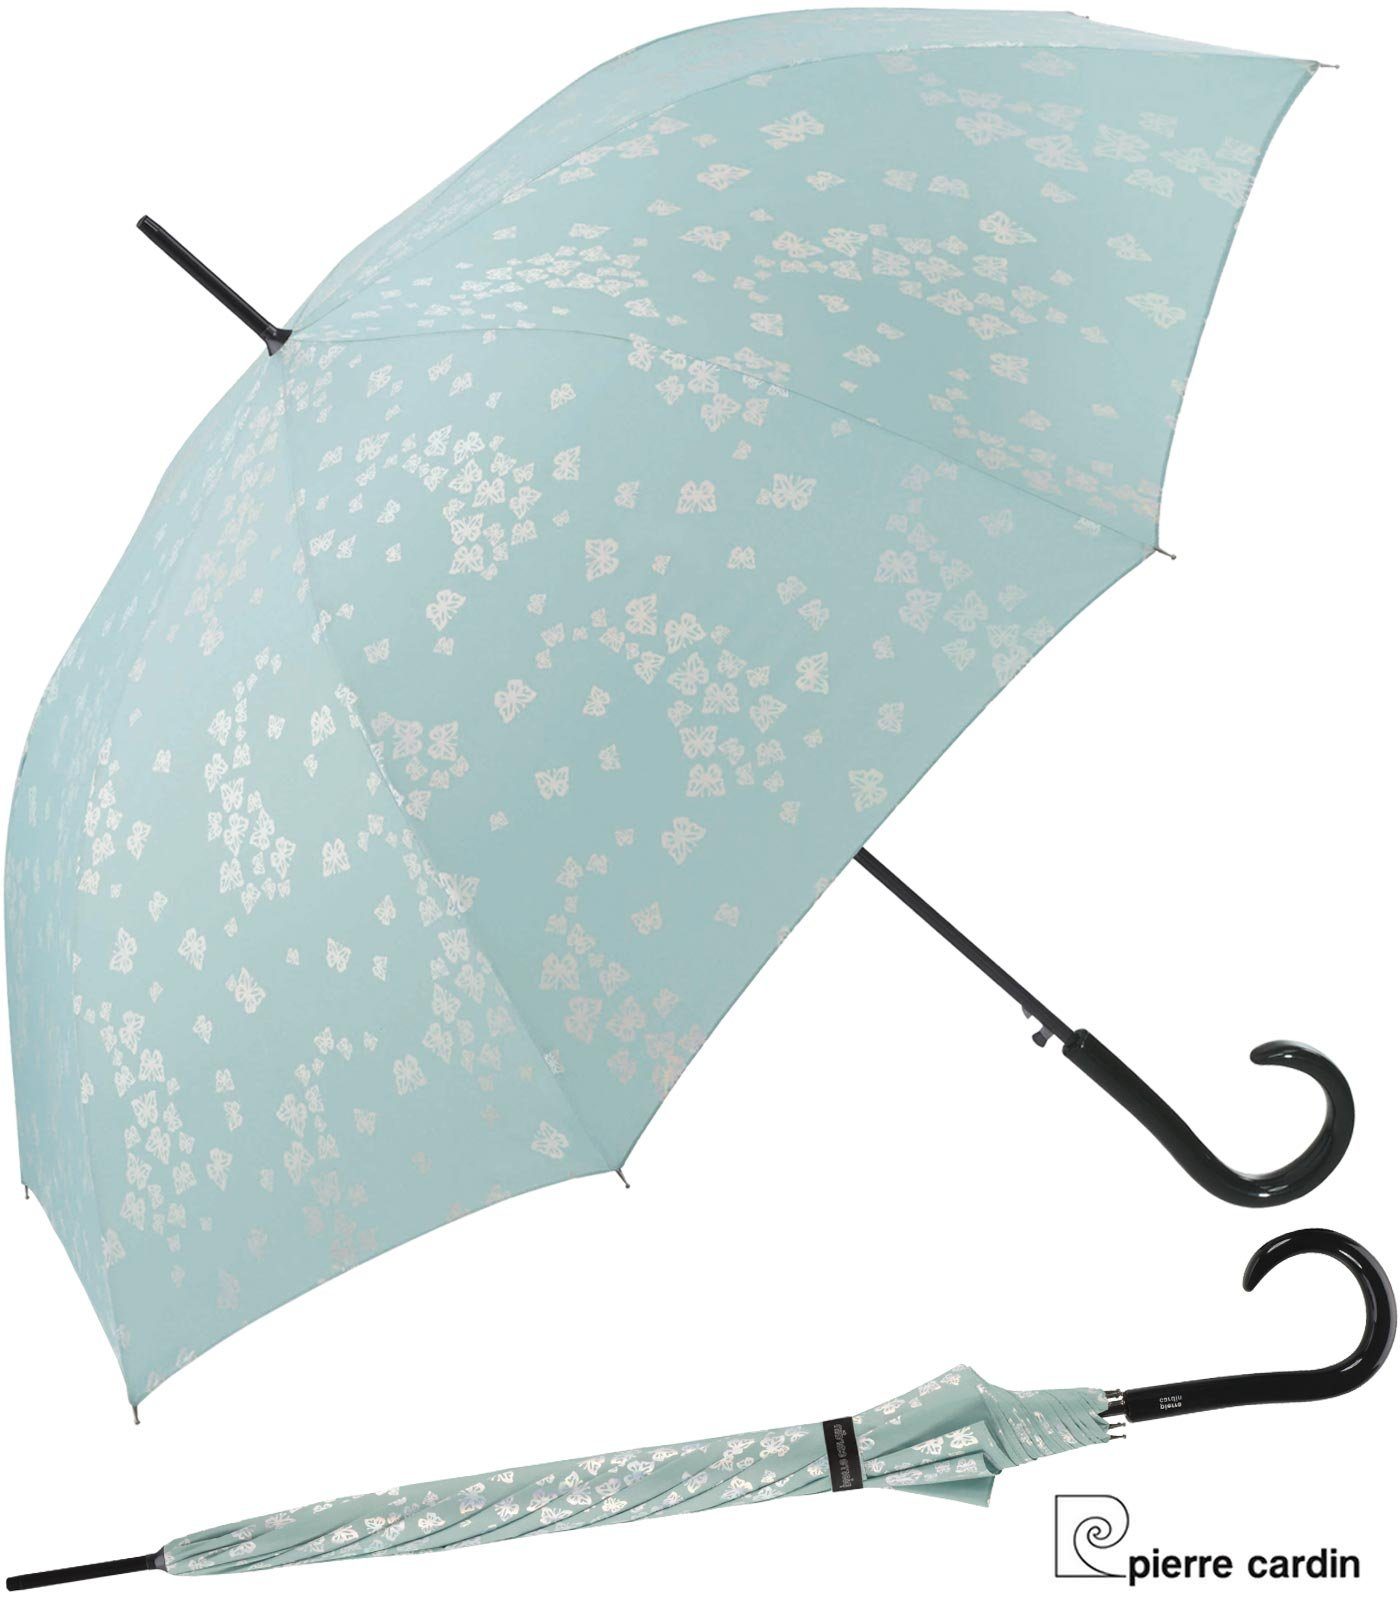 Pierre Cardin Langregenschirm mit Auf-Automatik Schmertterlinge türkis-silber, auffallend und wunderschön aquifer